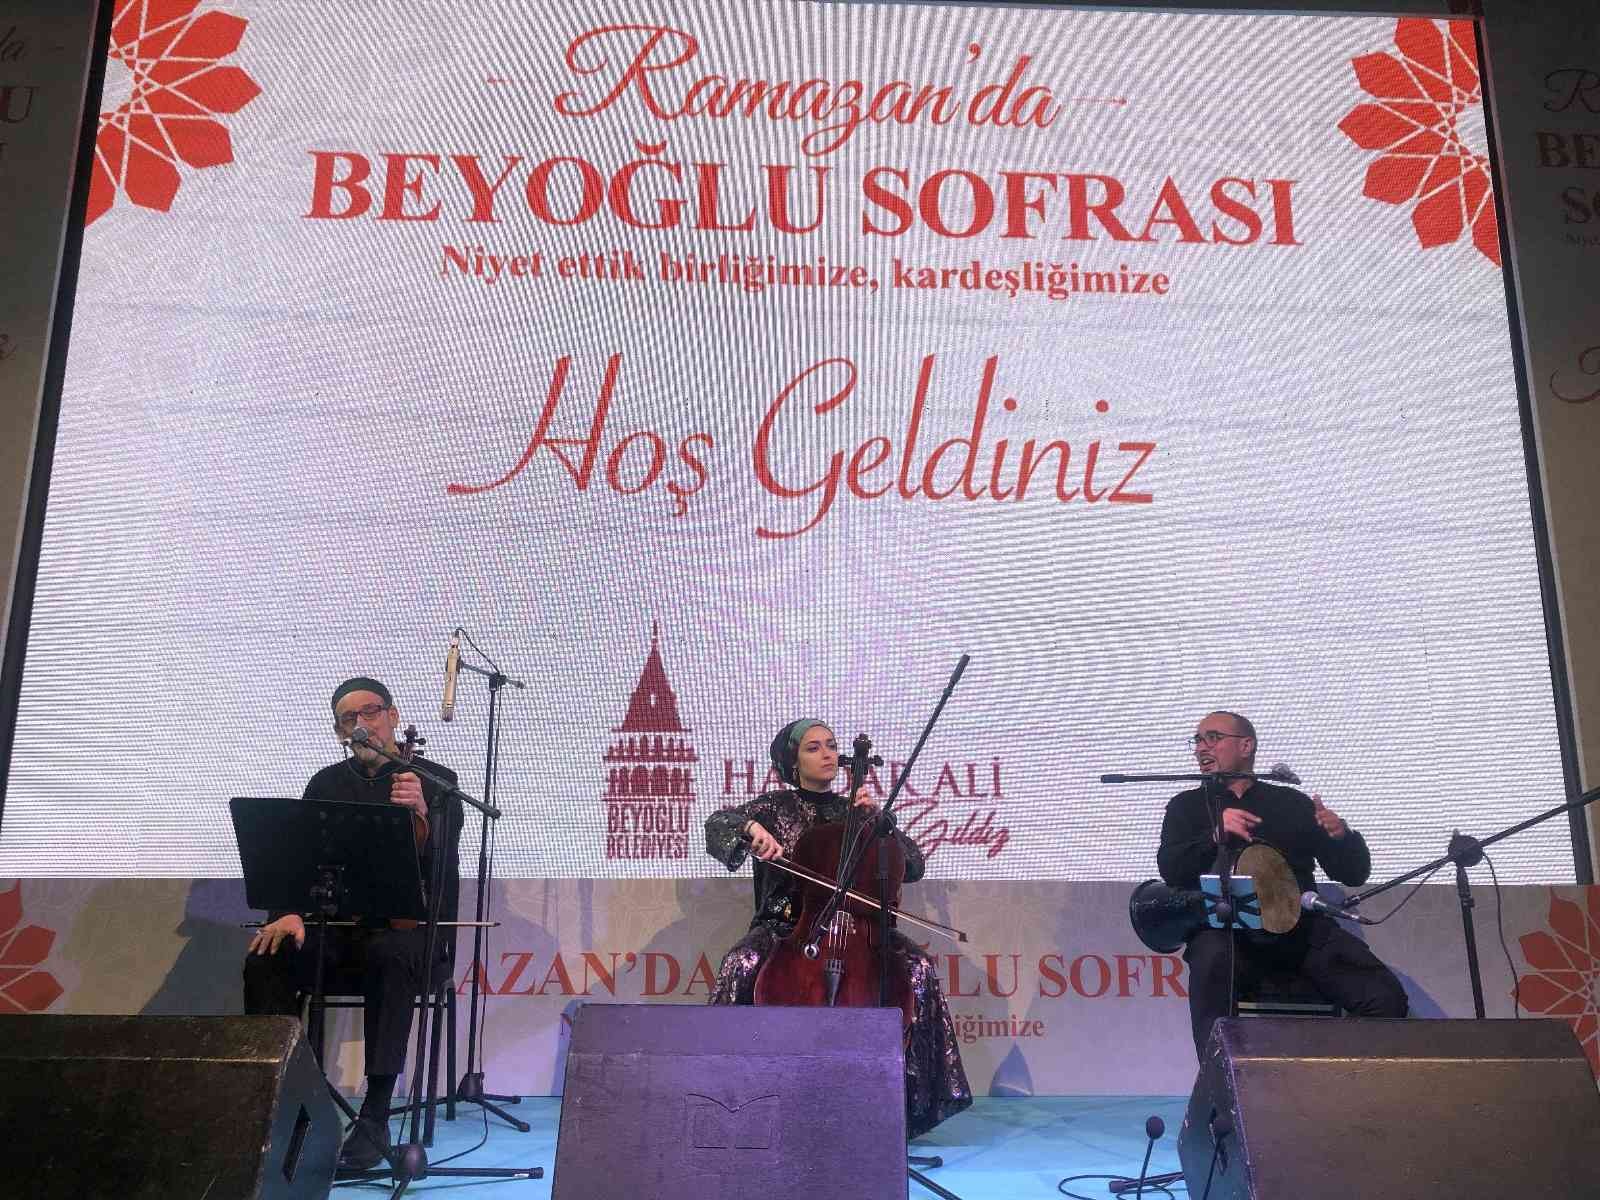 Türkiye Büyük Millet Meclisi (TBMM) Başkanı Mustafa Şentop, Beyoğlu Belediyesi’nin geleneksel iftar programında yaptığı konuşmada, "Ramazan özel ...